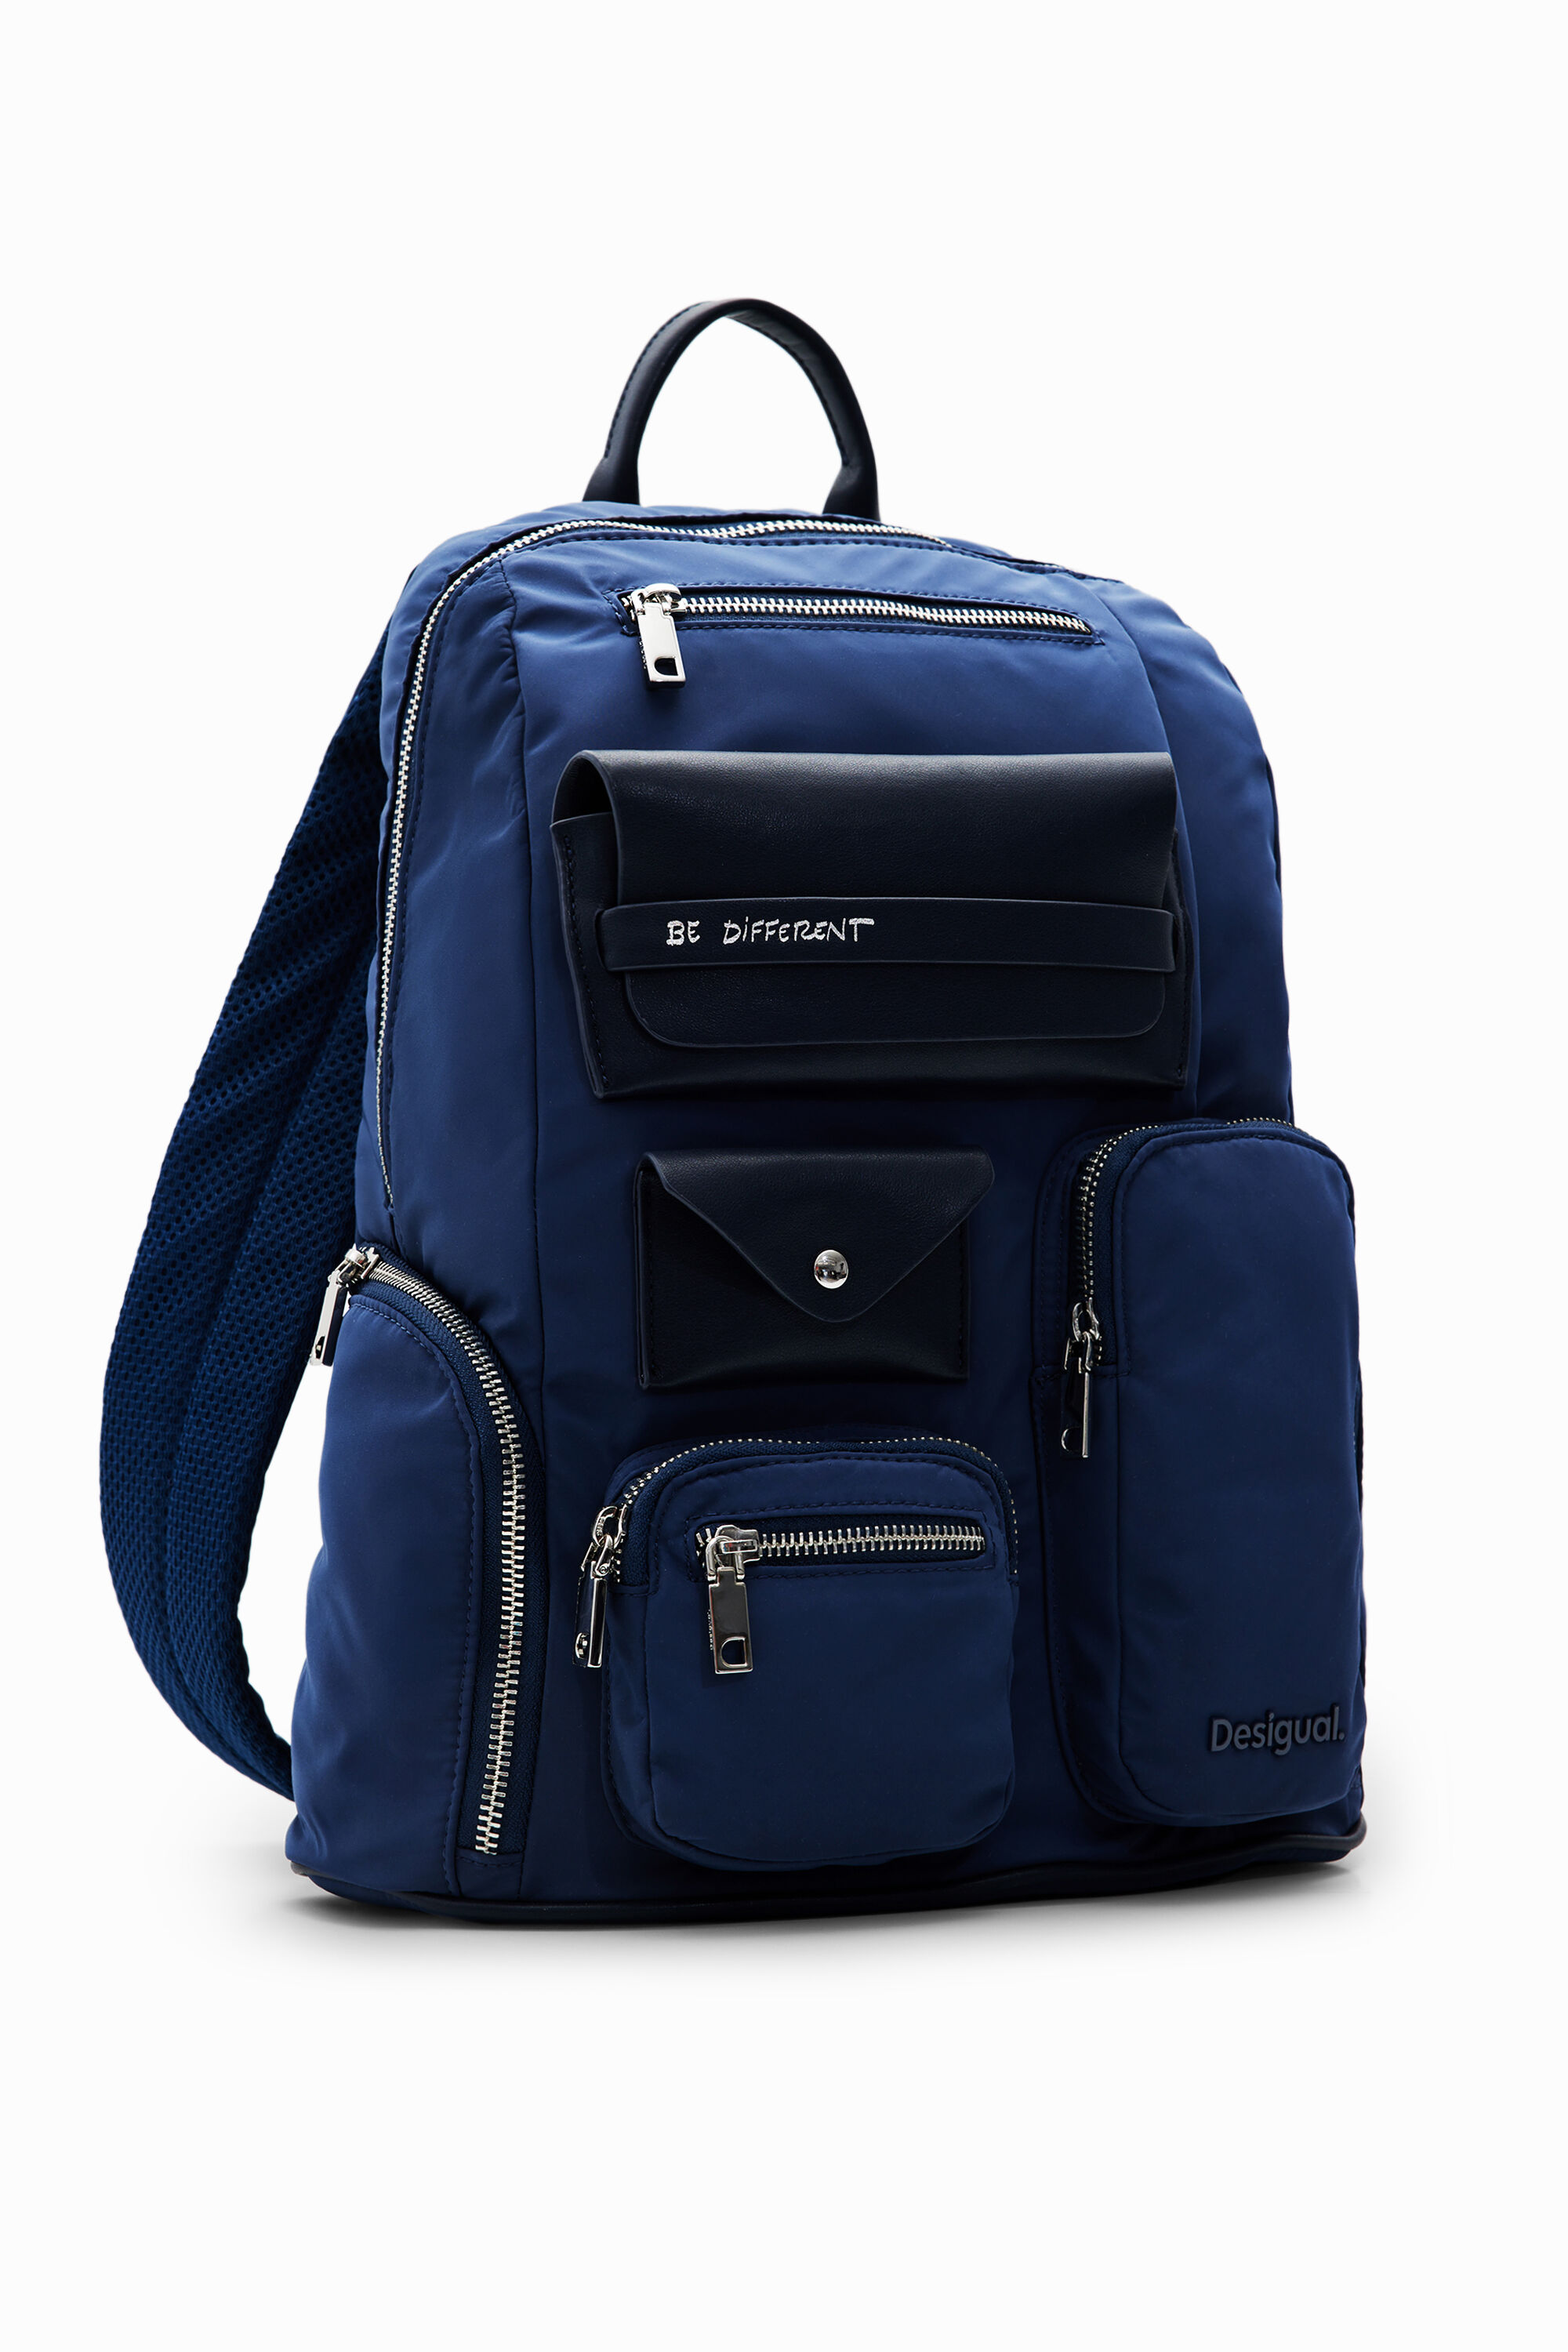 Desigual Large nylon pockets backpack